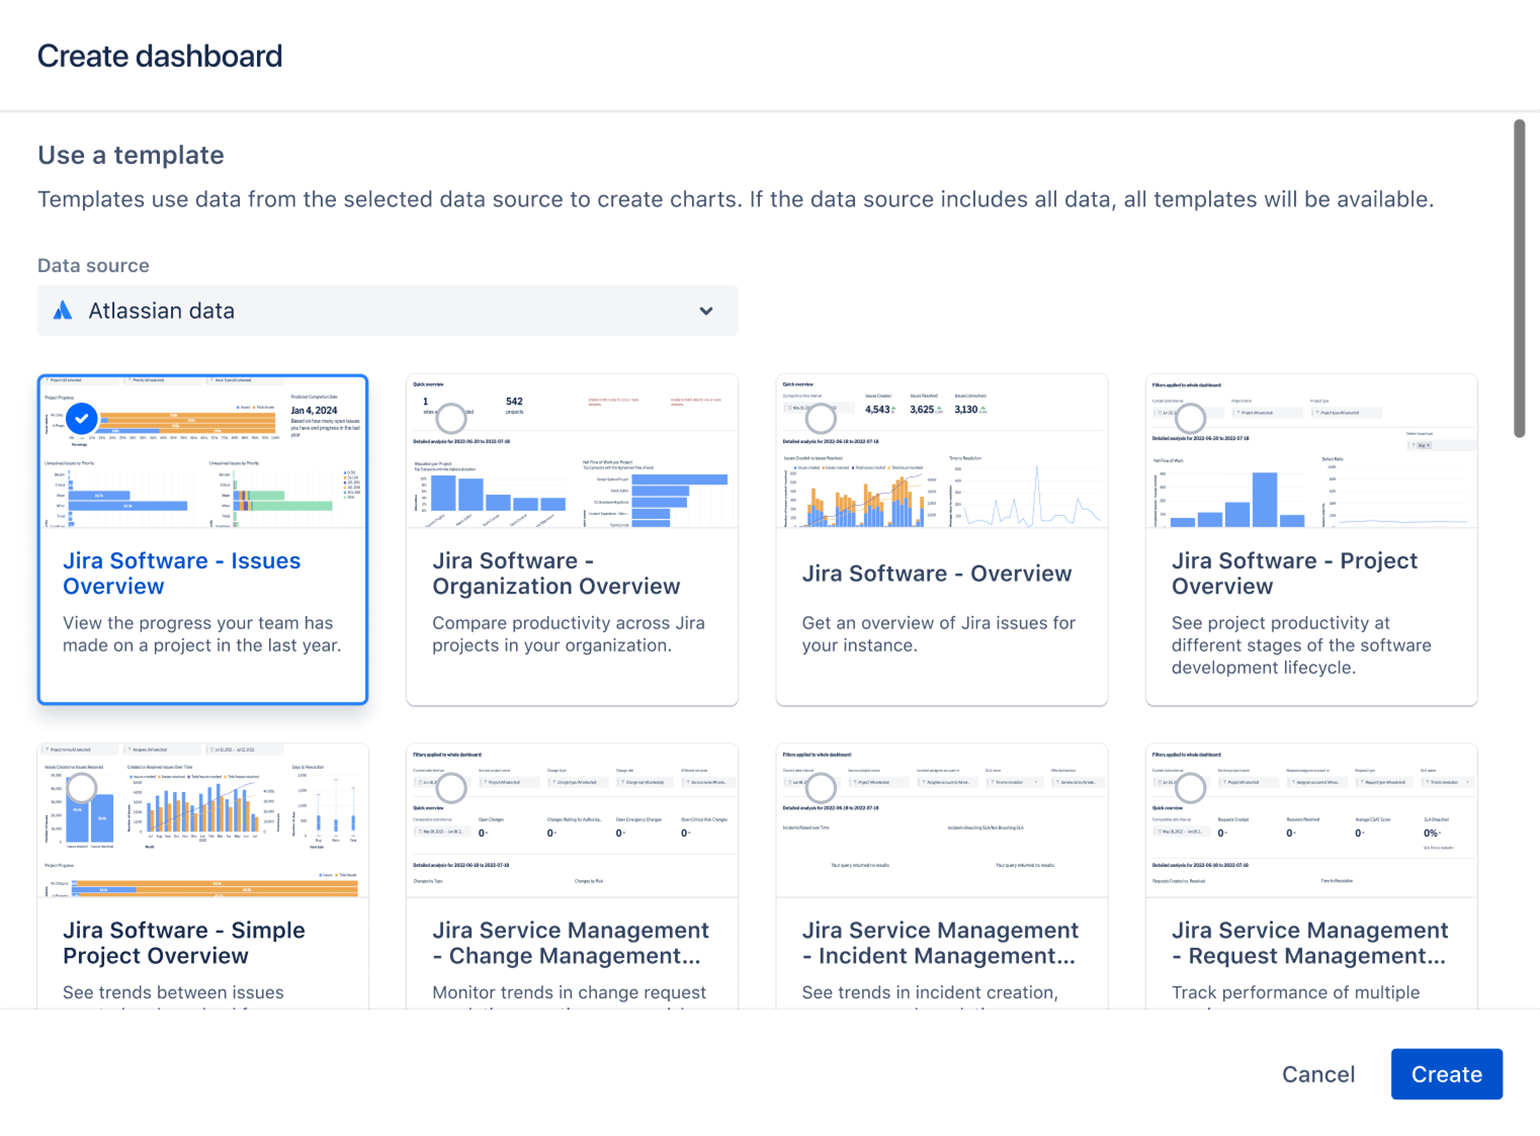 Ekran wyboru pokazuje przykłady szablonów, których można używać do pozyskiwania danych z produktów Atlassian podczas korzystania z Atlassian Analytics.